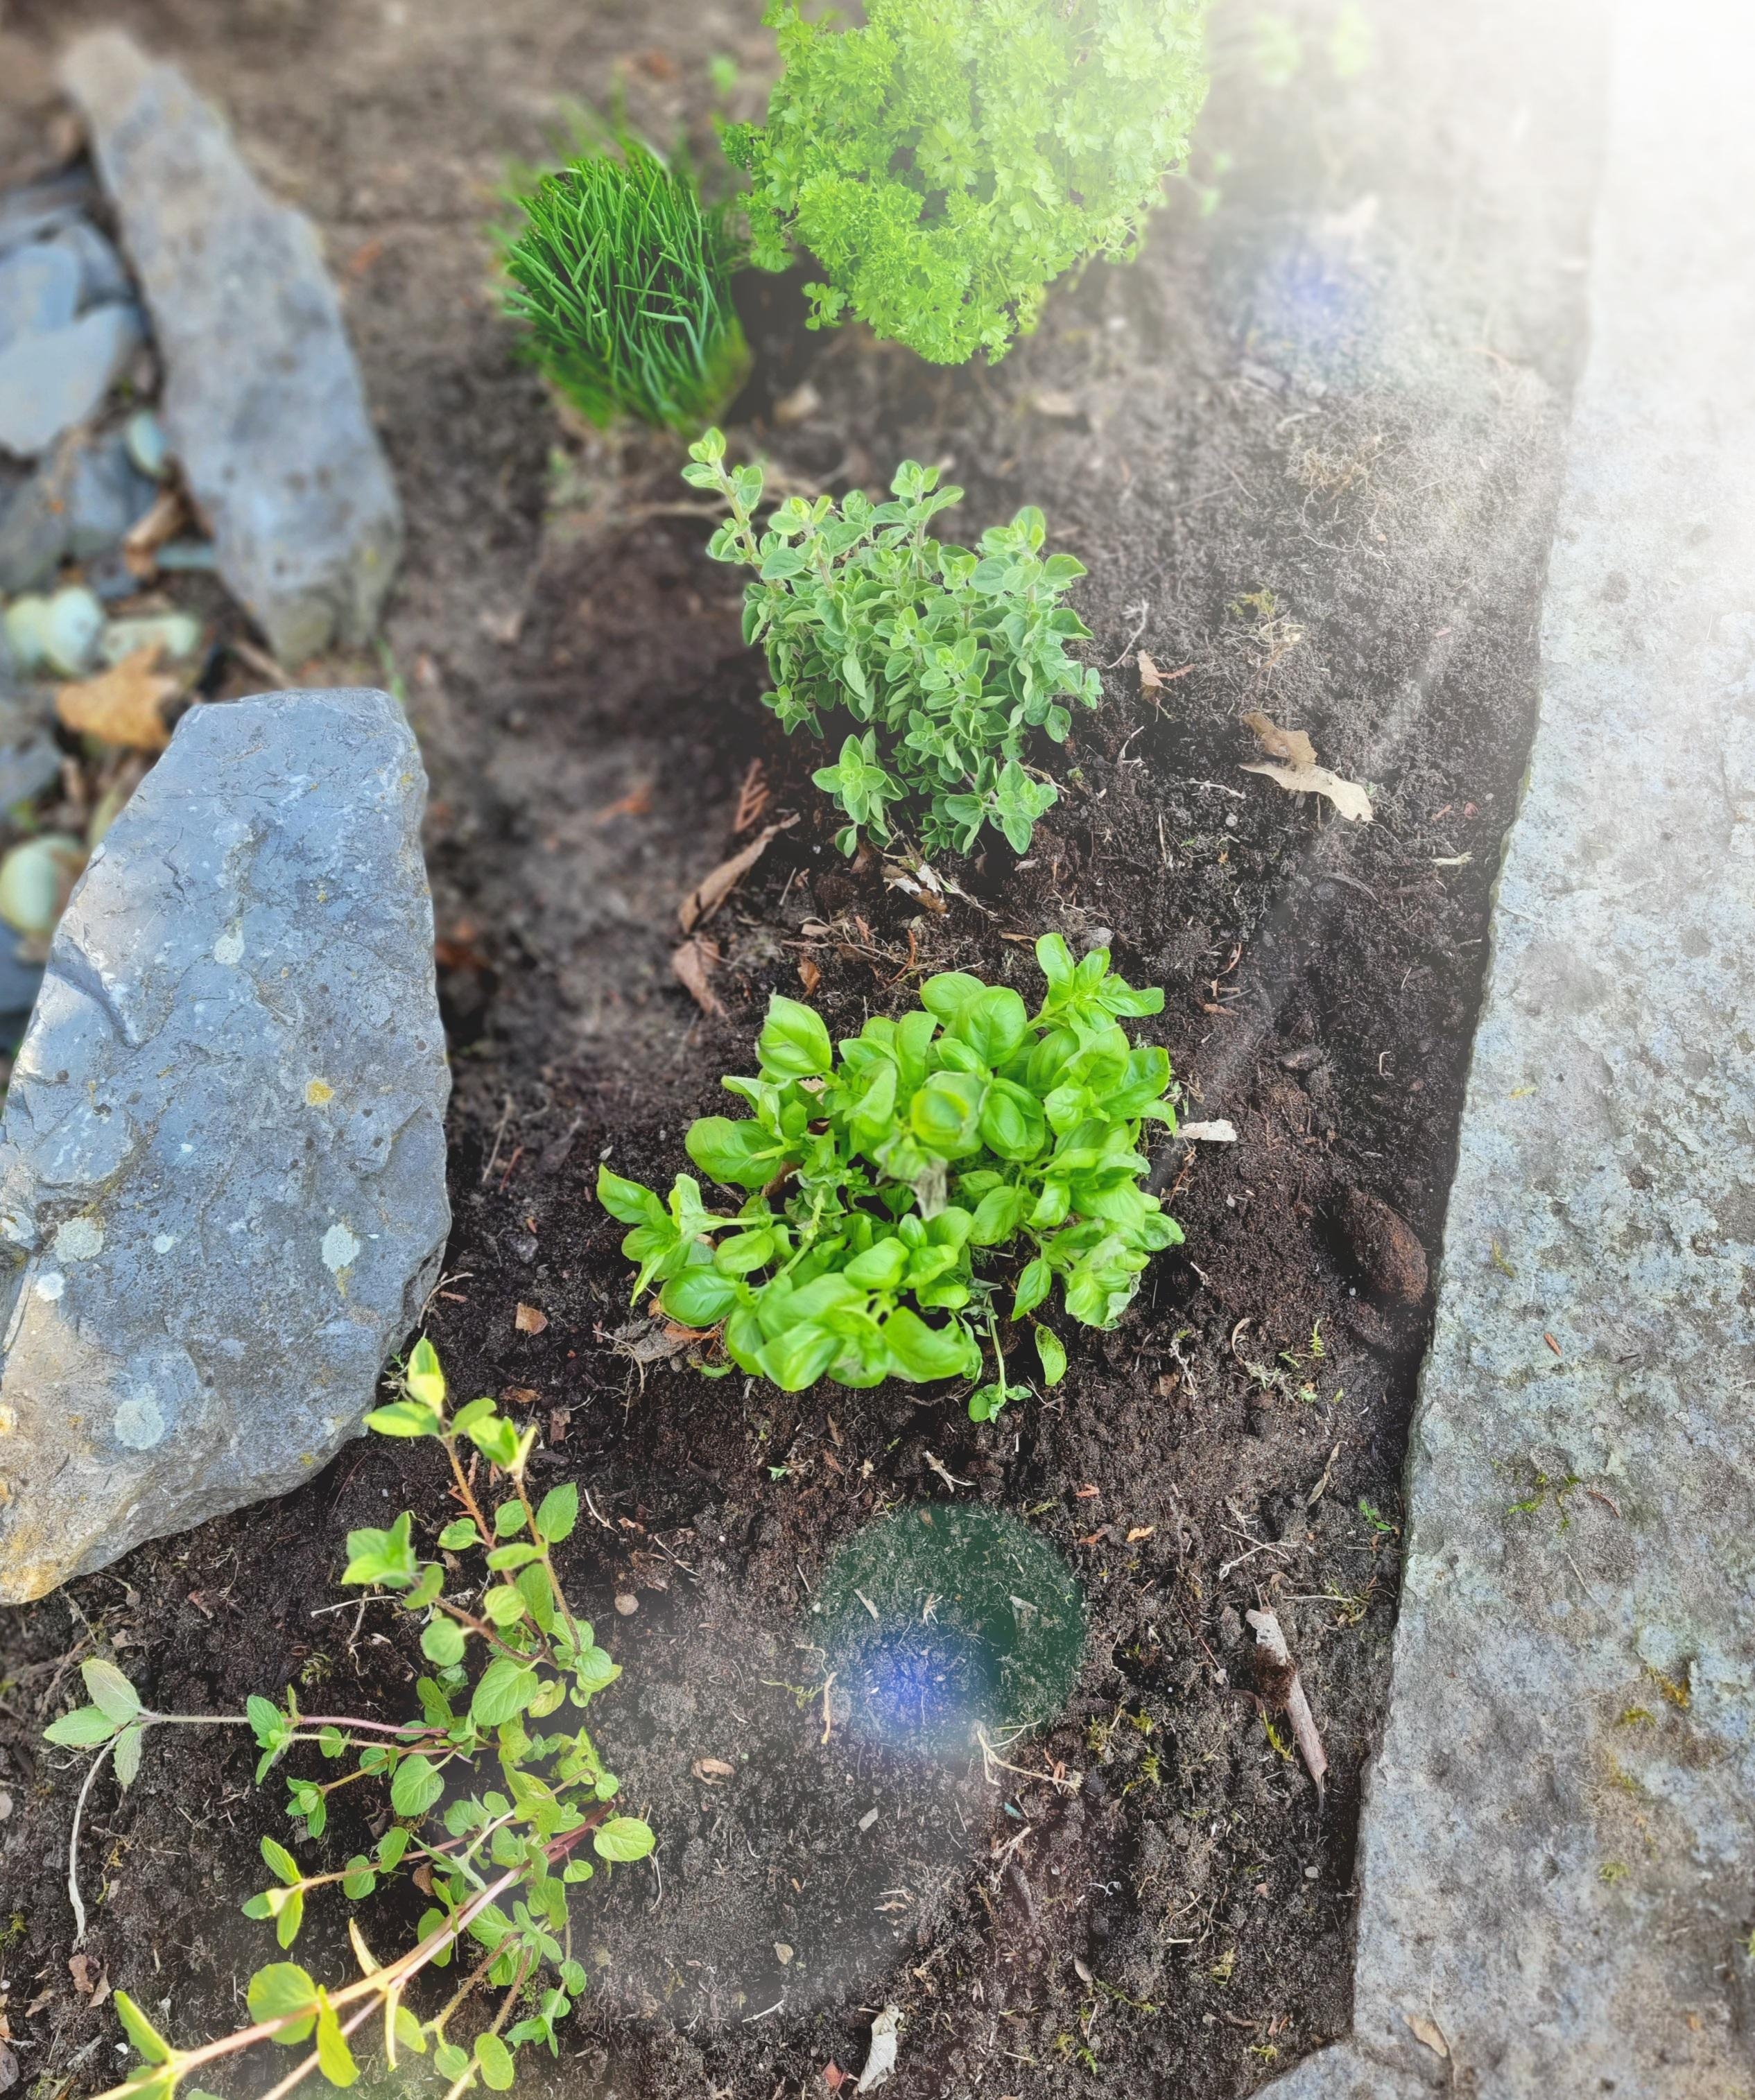 #kräutergarten 
Diese Woche spontan eine kleine Kräuterecke im neuen Garten angelegt